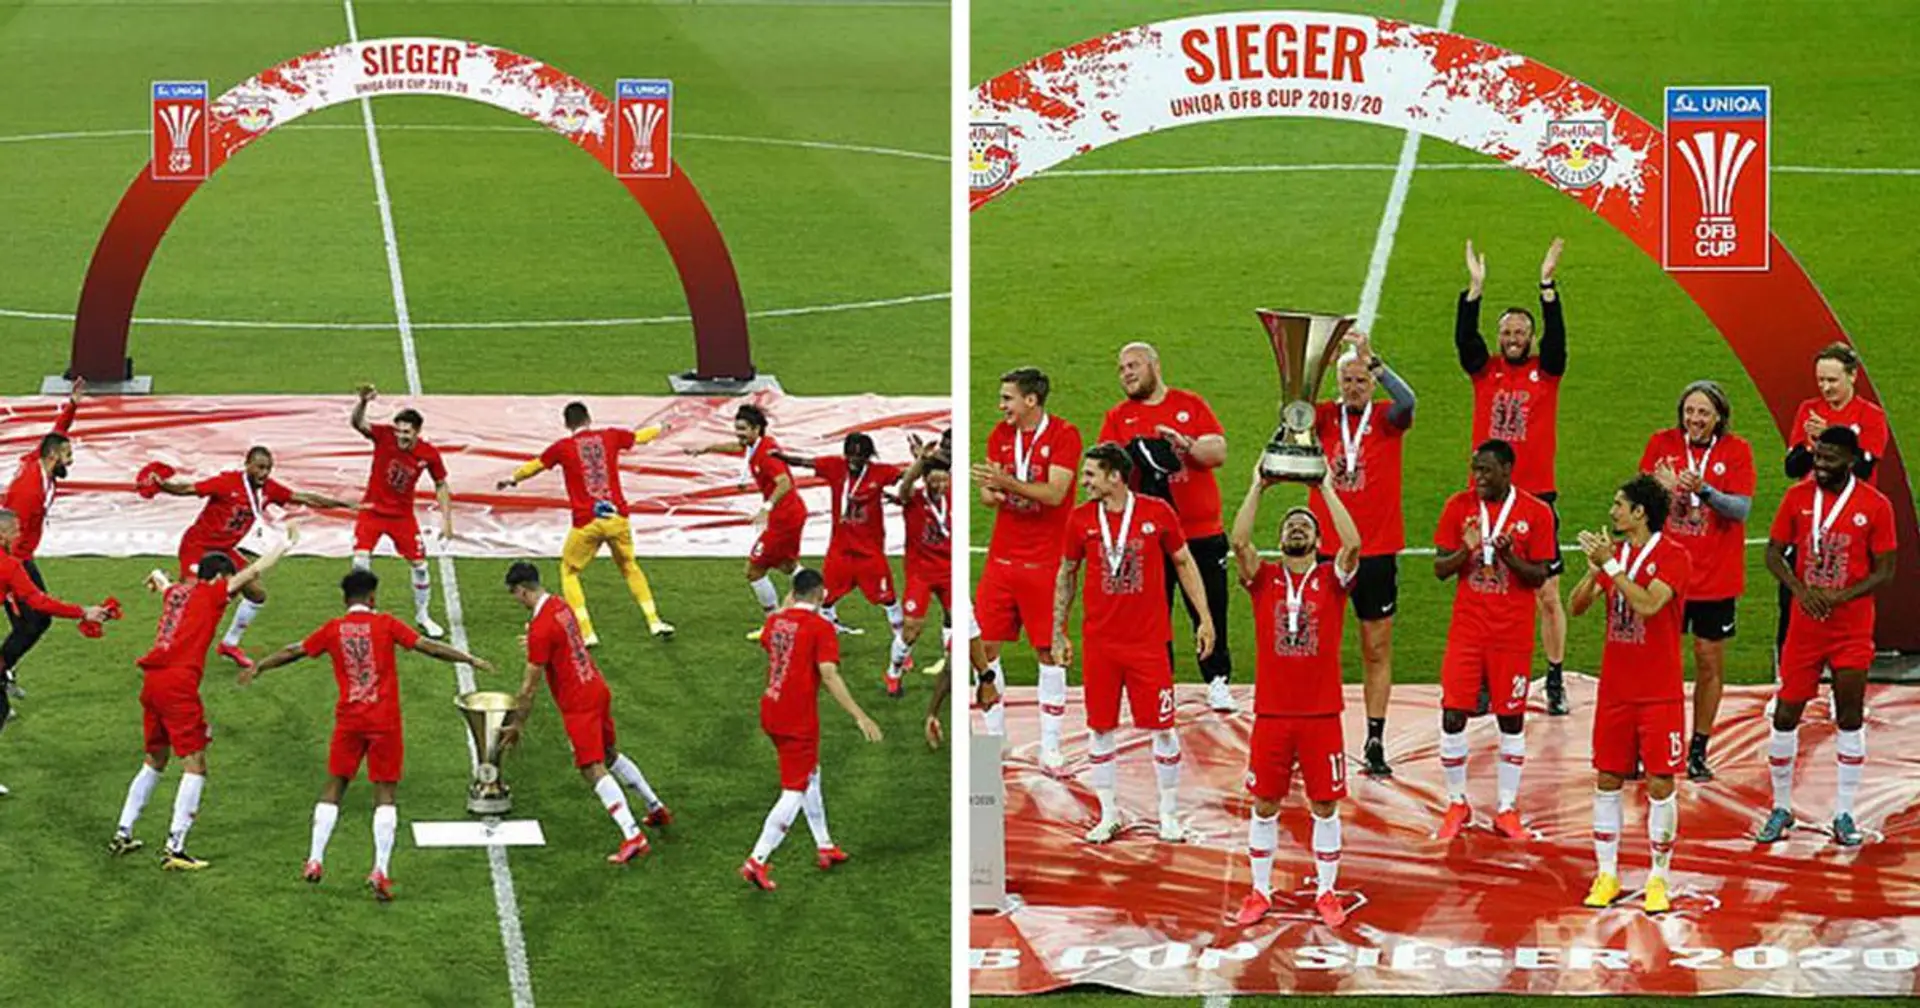 ¿Celebrará así el Madrid el título de Liga? Las imágenes de la celebración en Austria guardando las distancias de seguridad